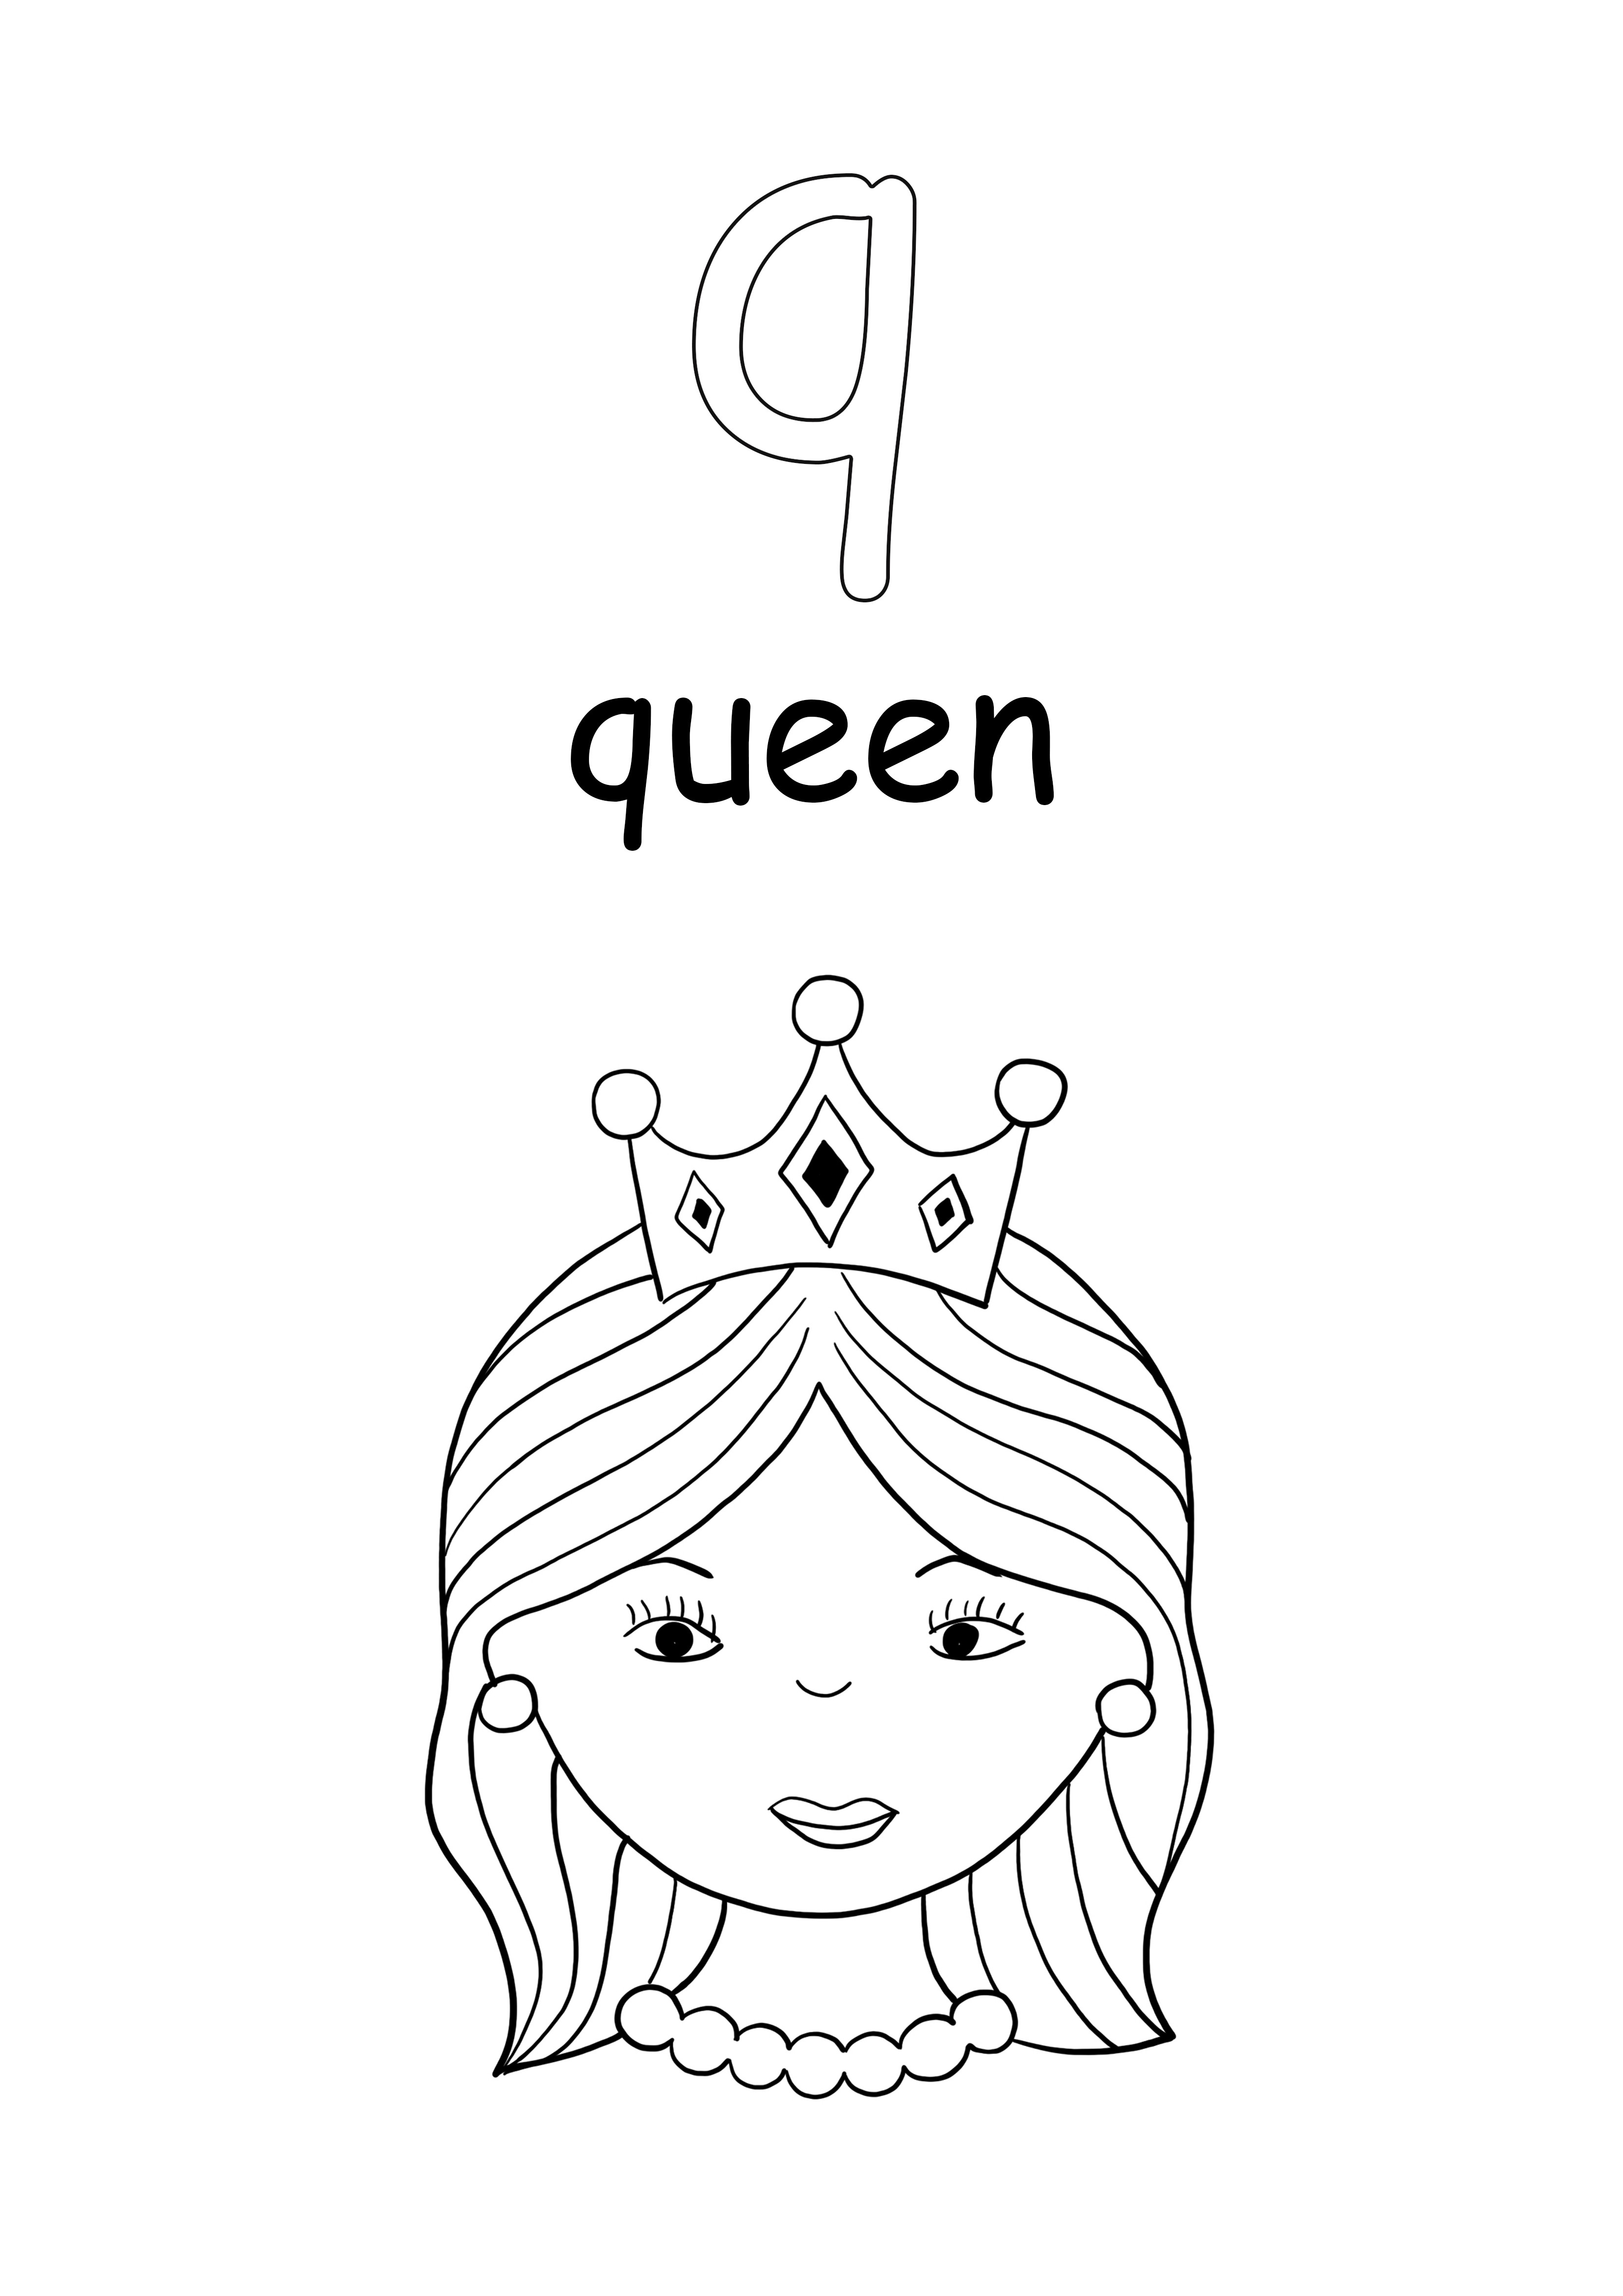 小文字の単語の女王と文字のqの色付けと無料でダウンロード